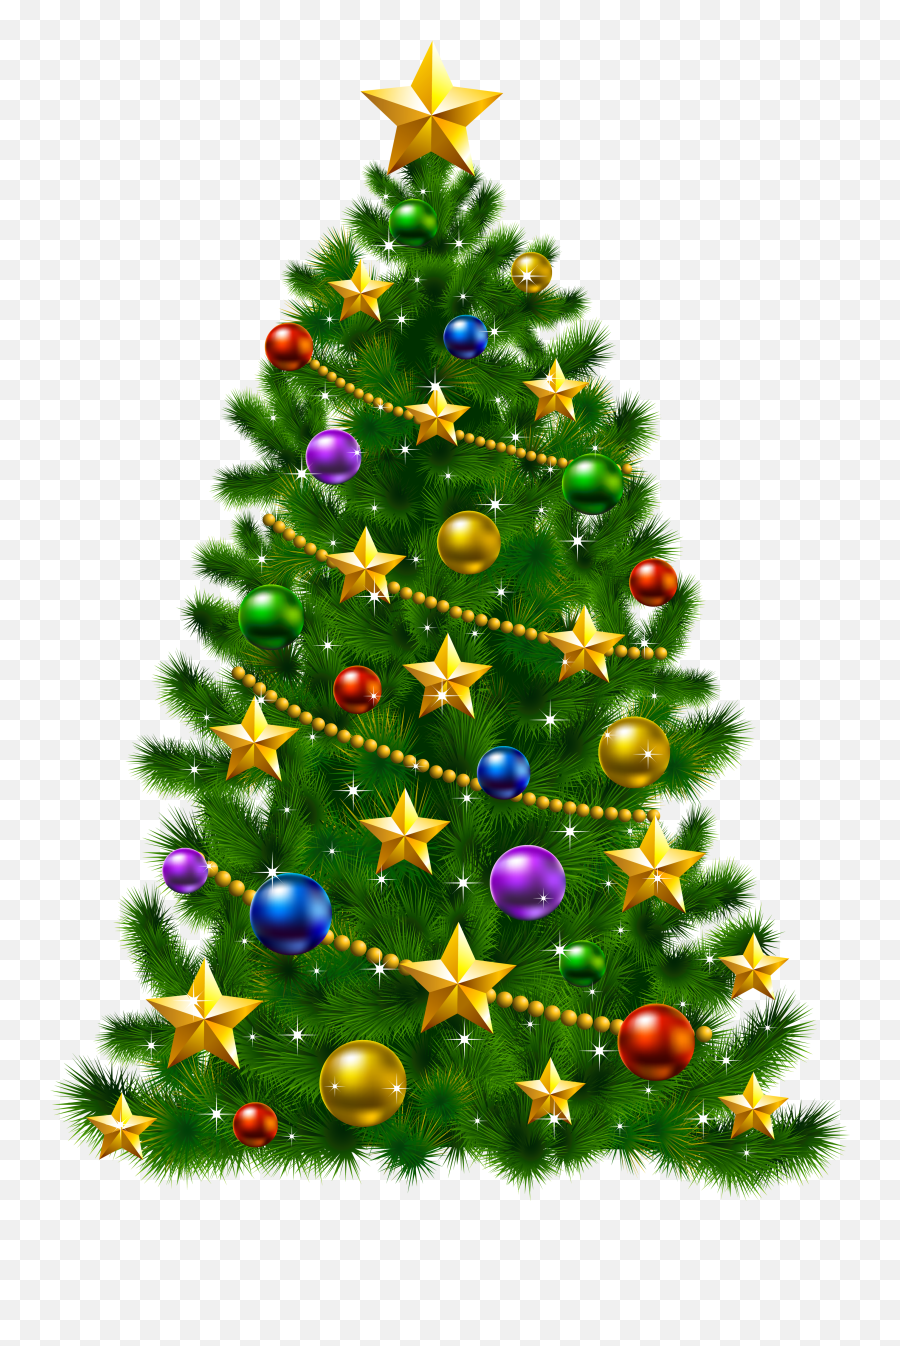 Green Christmas Tree Png Image Emoji,Christmas Tree Png